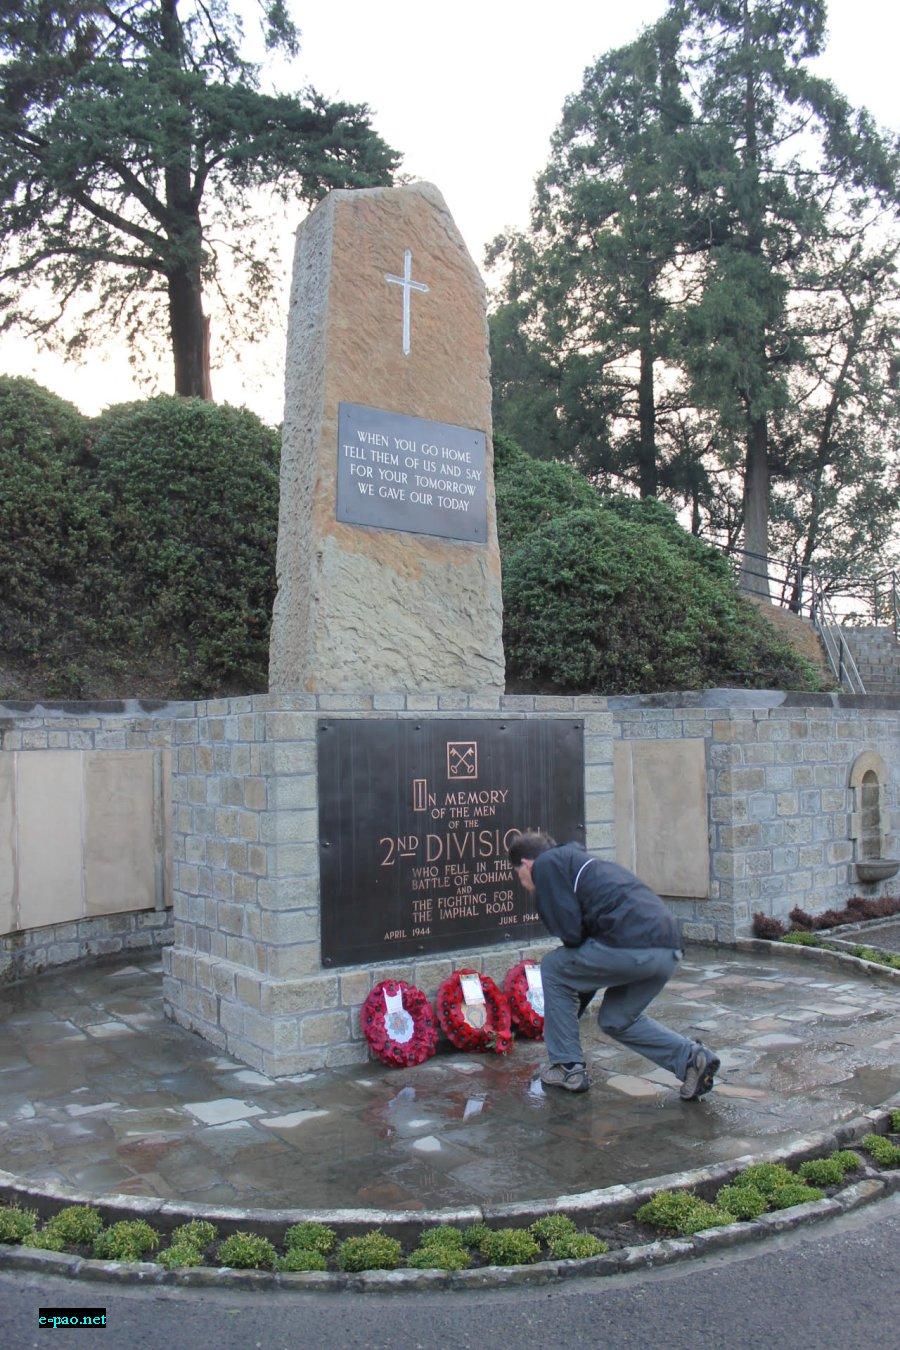  2nd Division Memorial at Kohima 